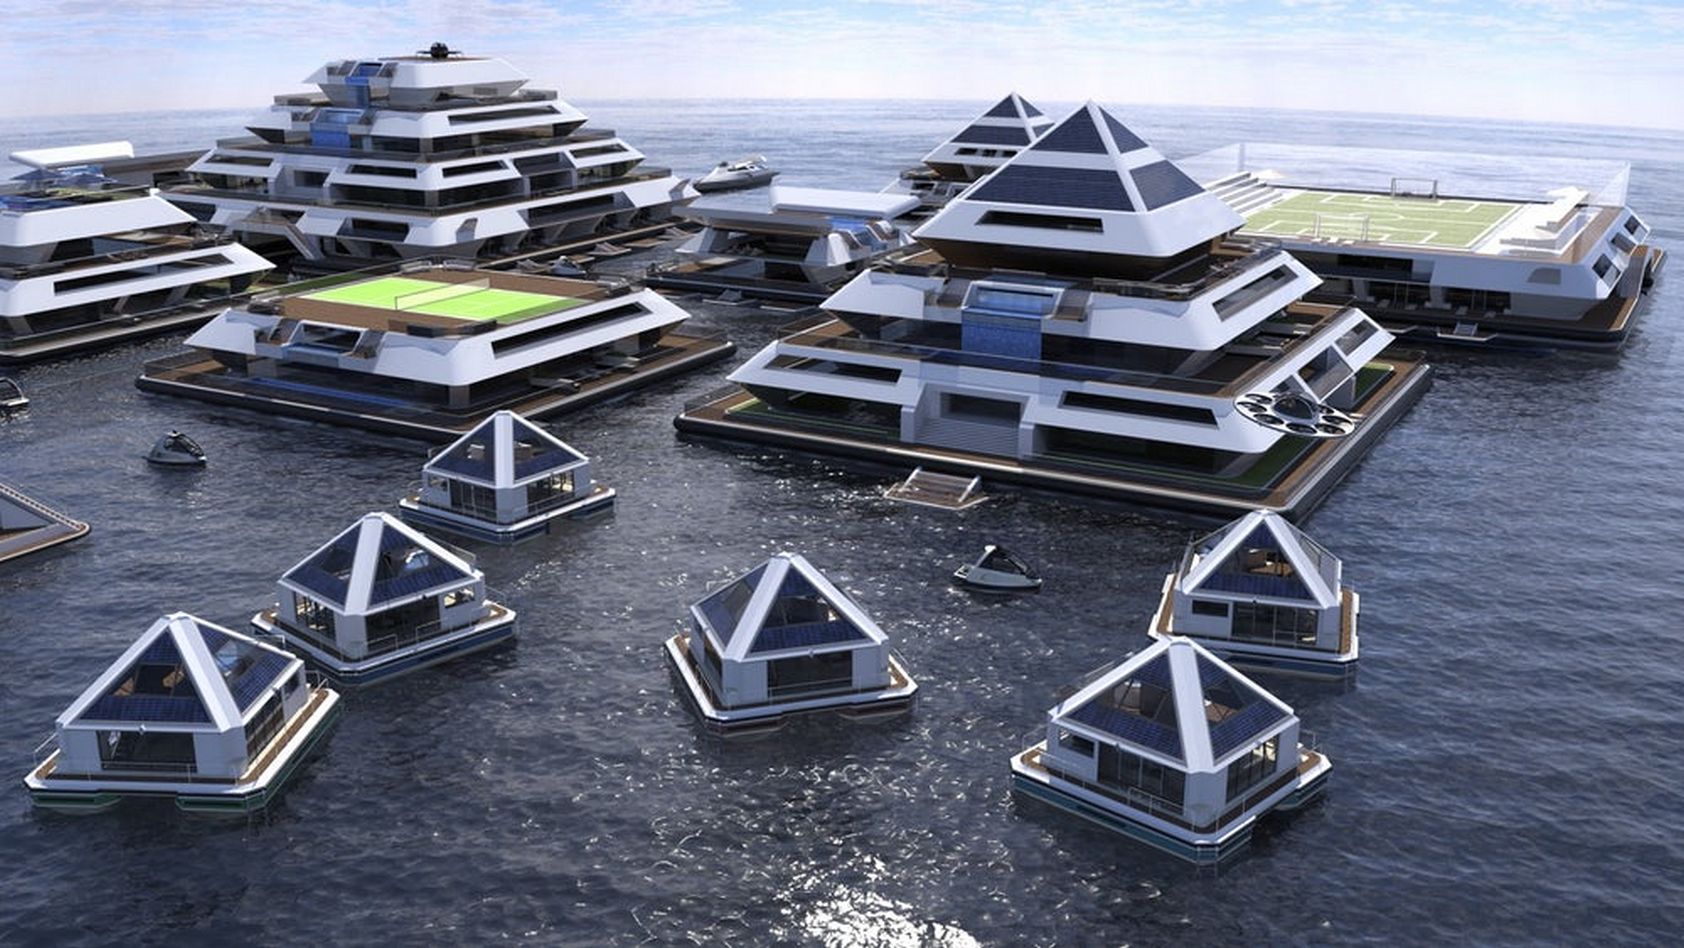 Le concept de cité flottante Waya. © Pierpaolo Lazzarini

